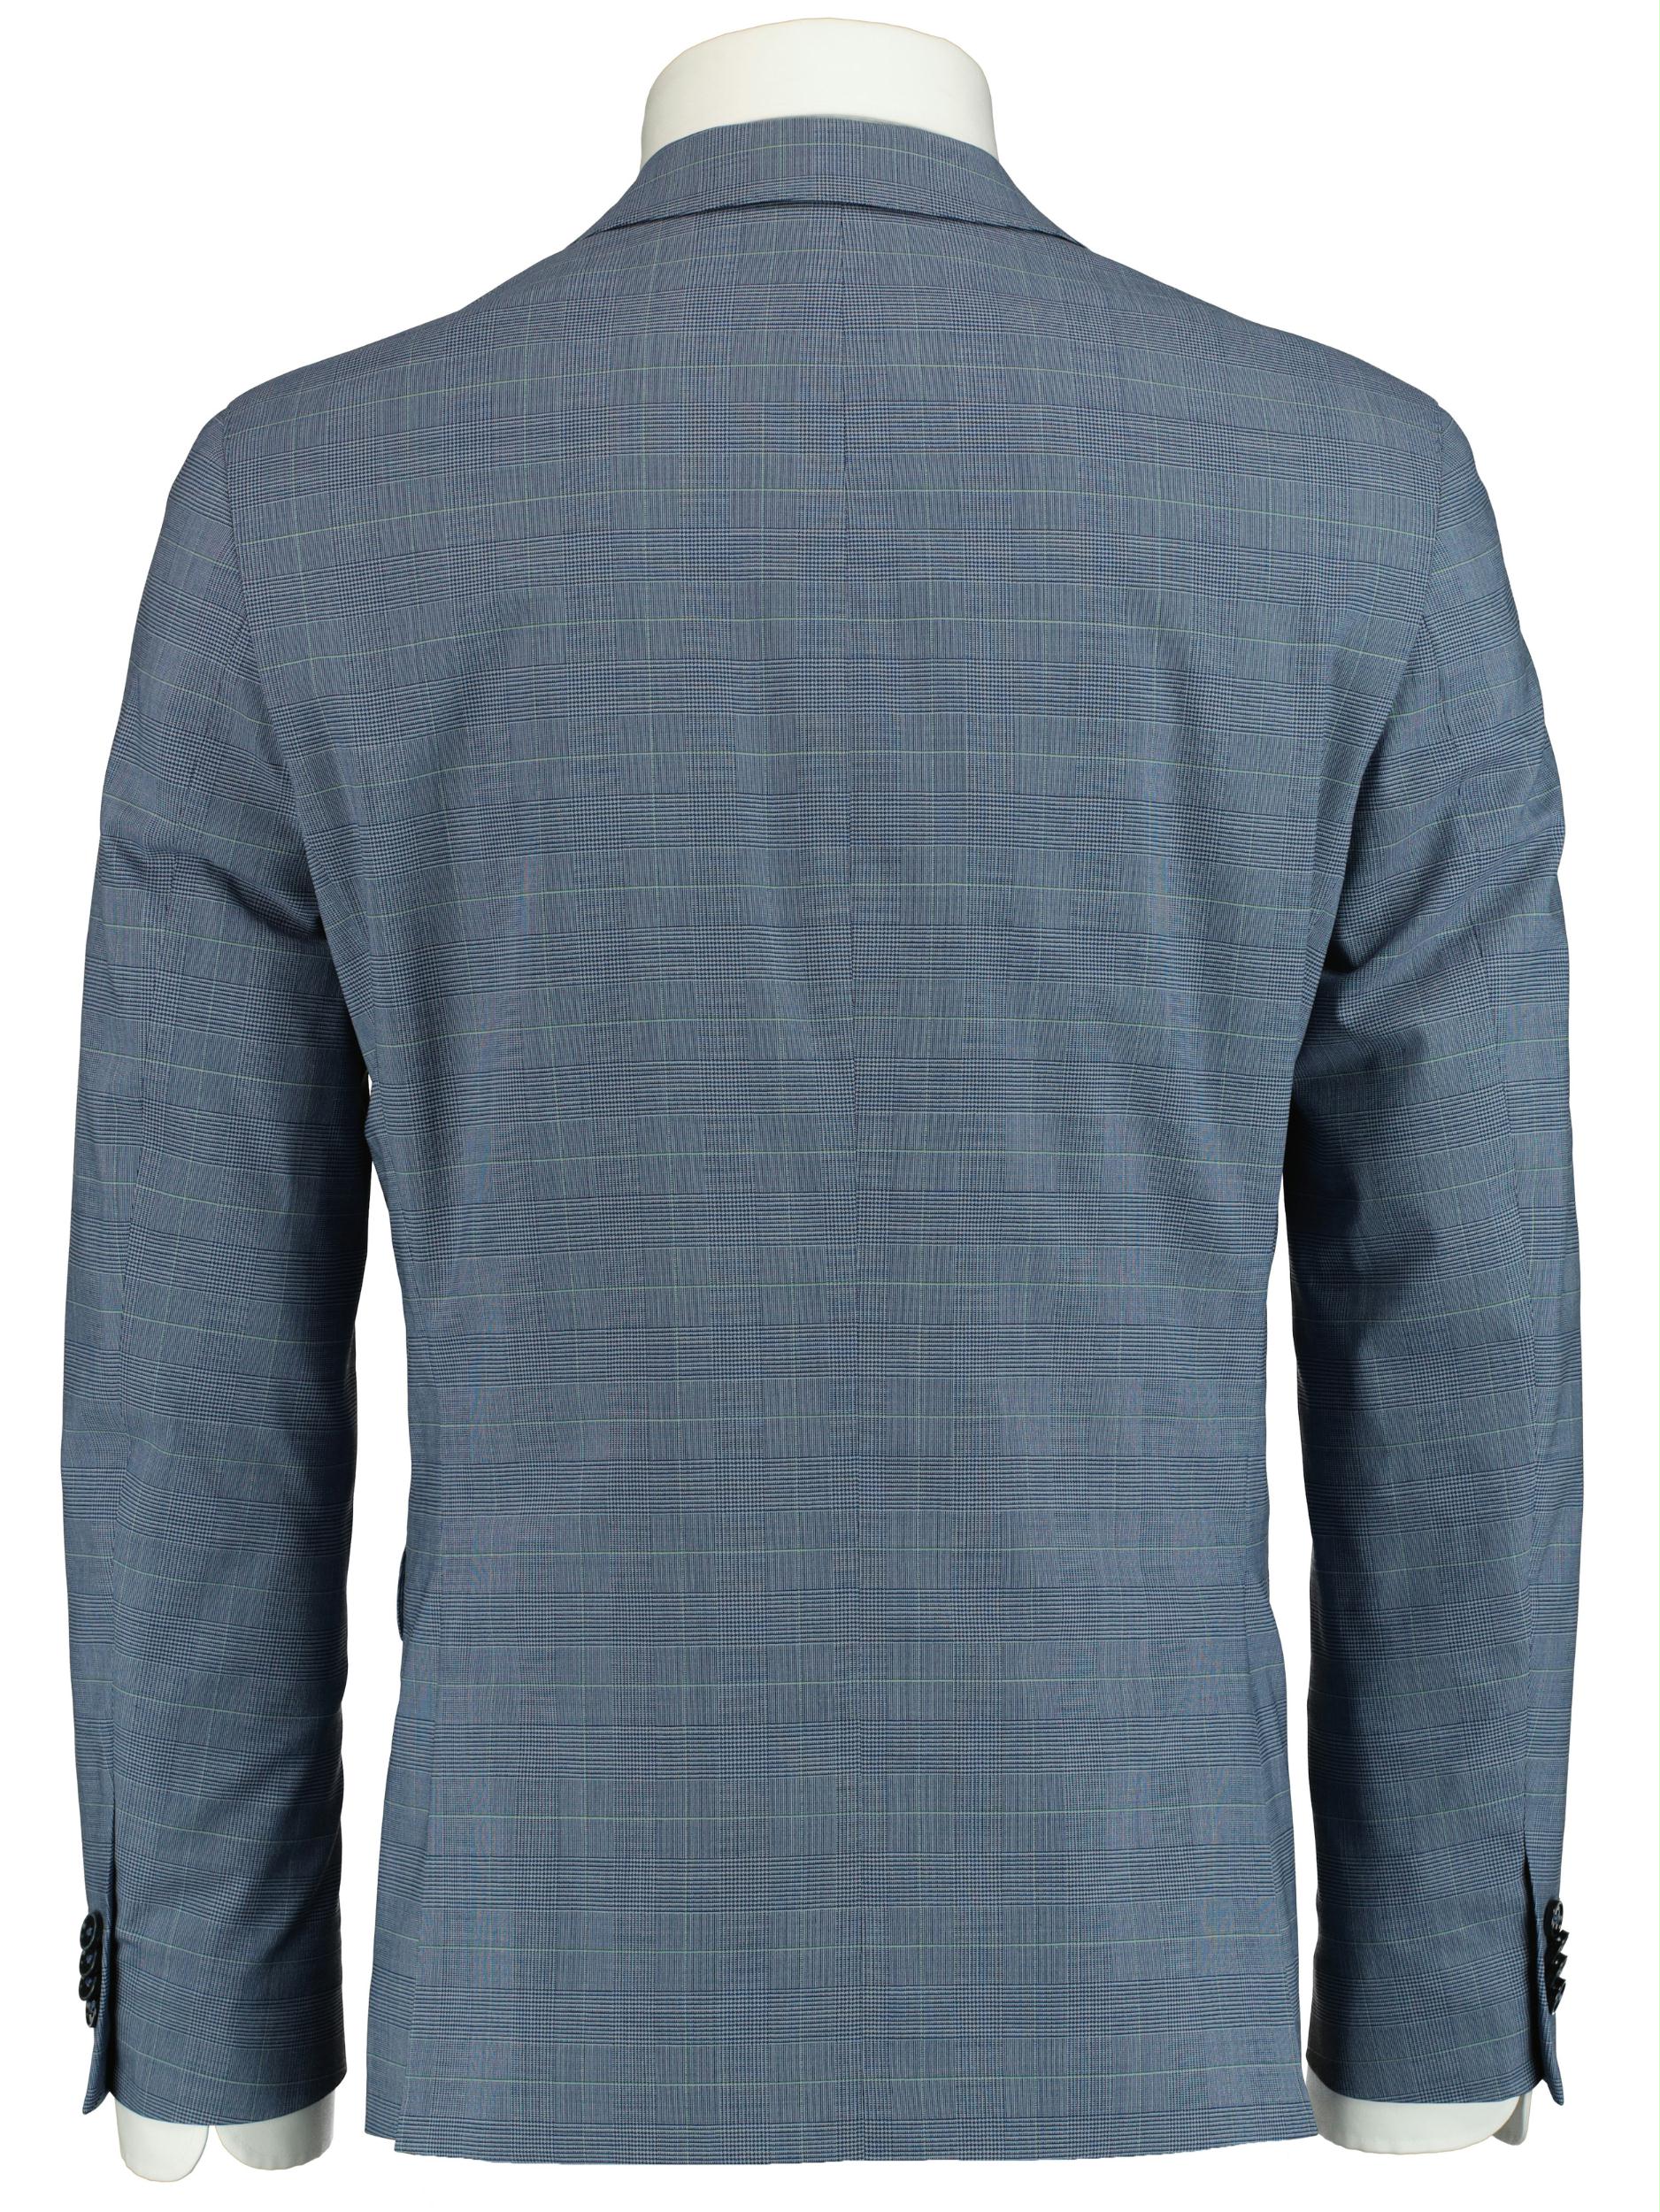 Scotland Blue Kostuum Blauw D7,5 Lyon Suit 211027LY07SB/240 blue